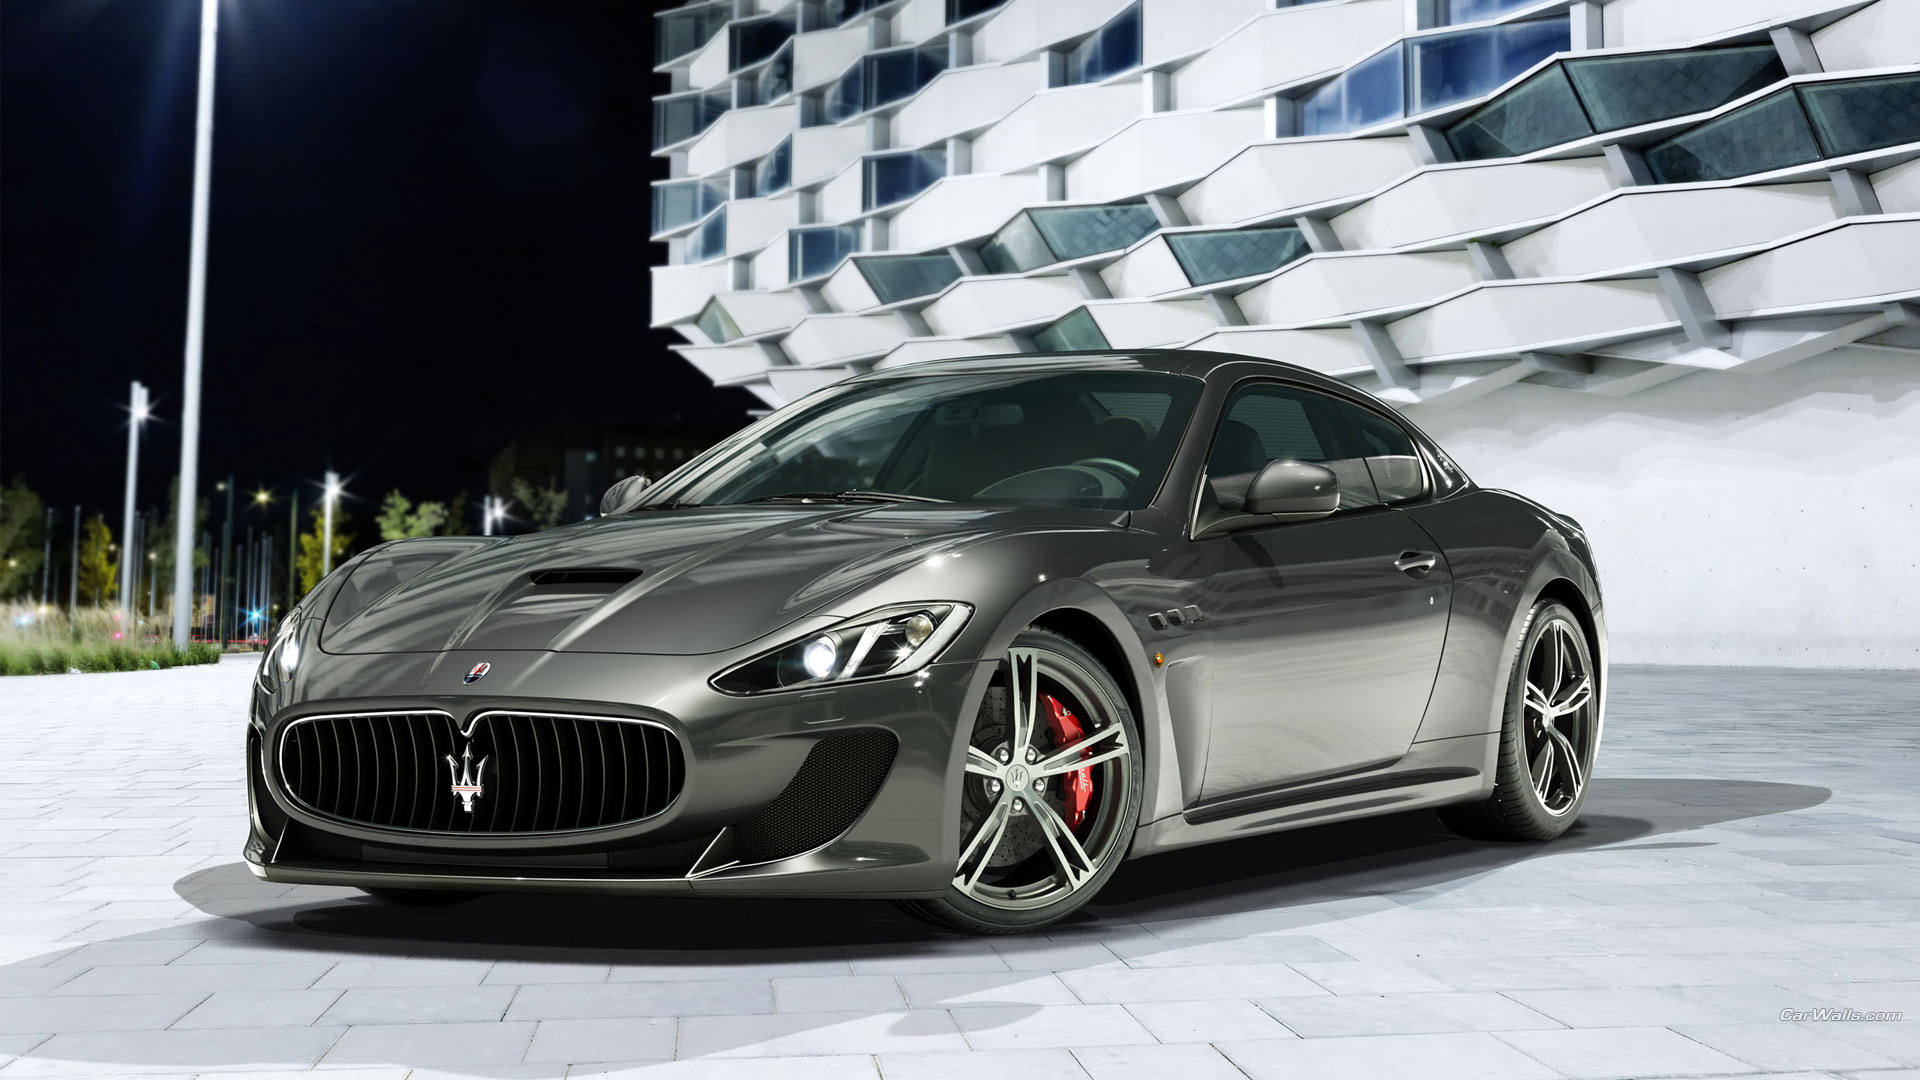 Скачать обои 2014 Maserati Granturismo Mc Stradale на телефон бесплатно